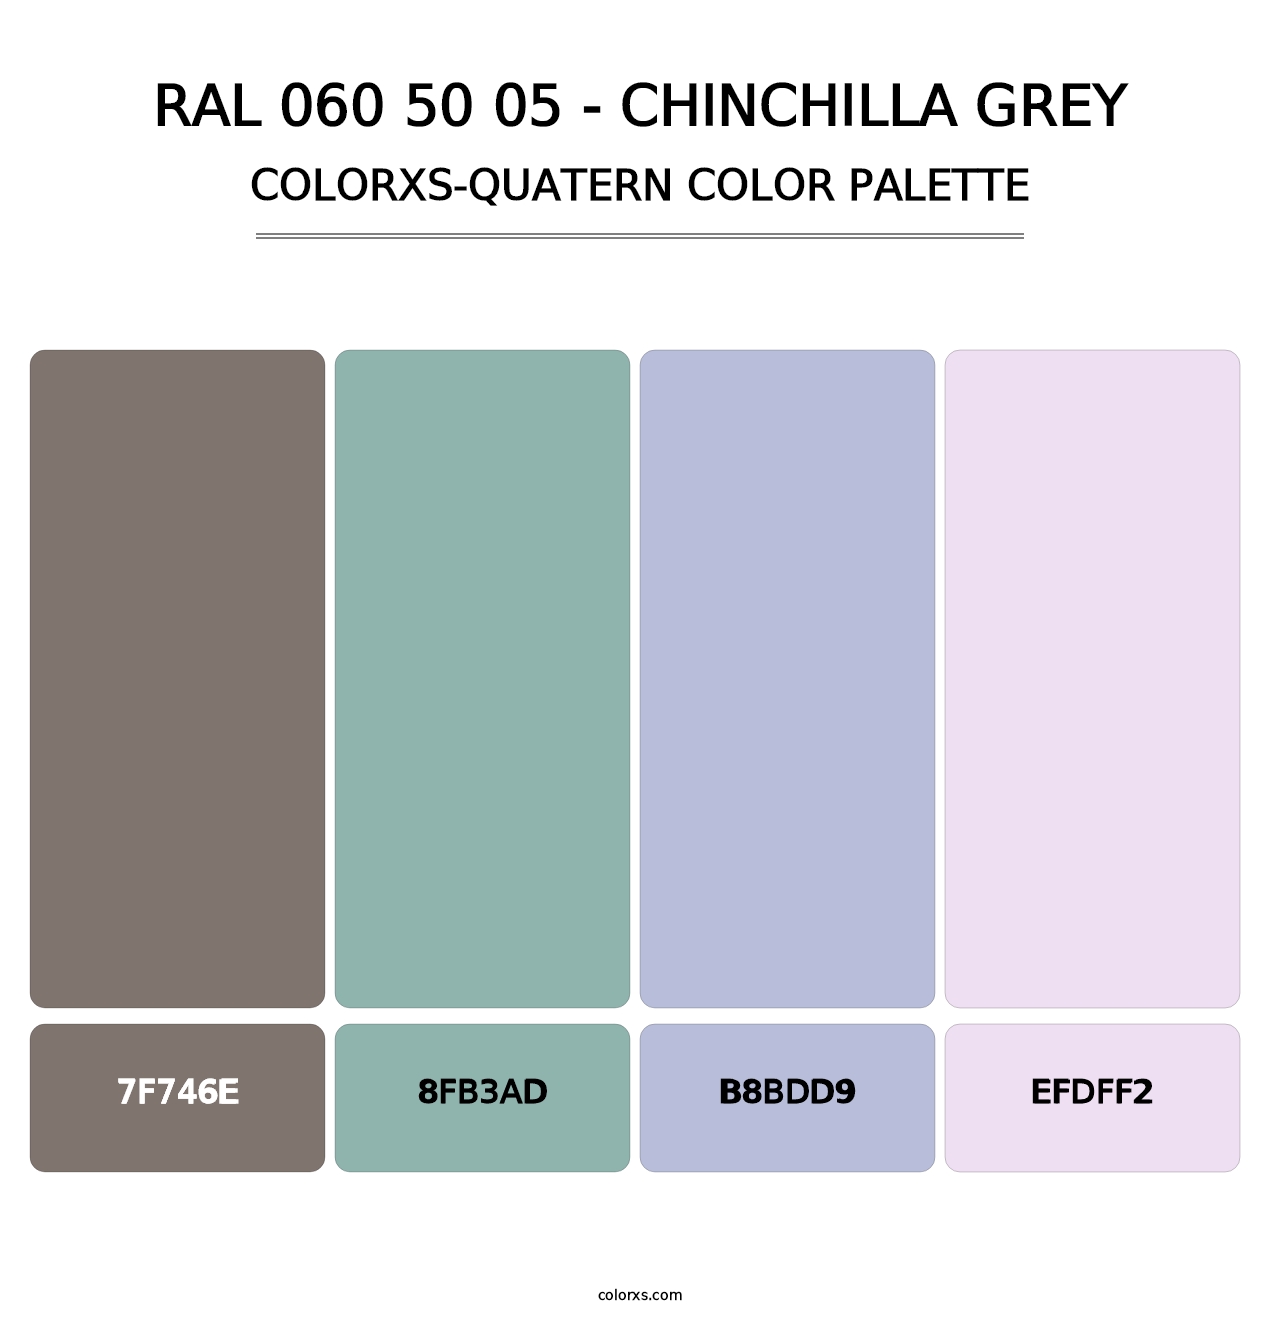 RAL 060 50 05 - Chinchilla Grey - Colorxs Quatern Palette